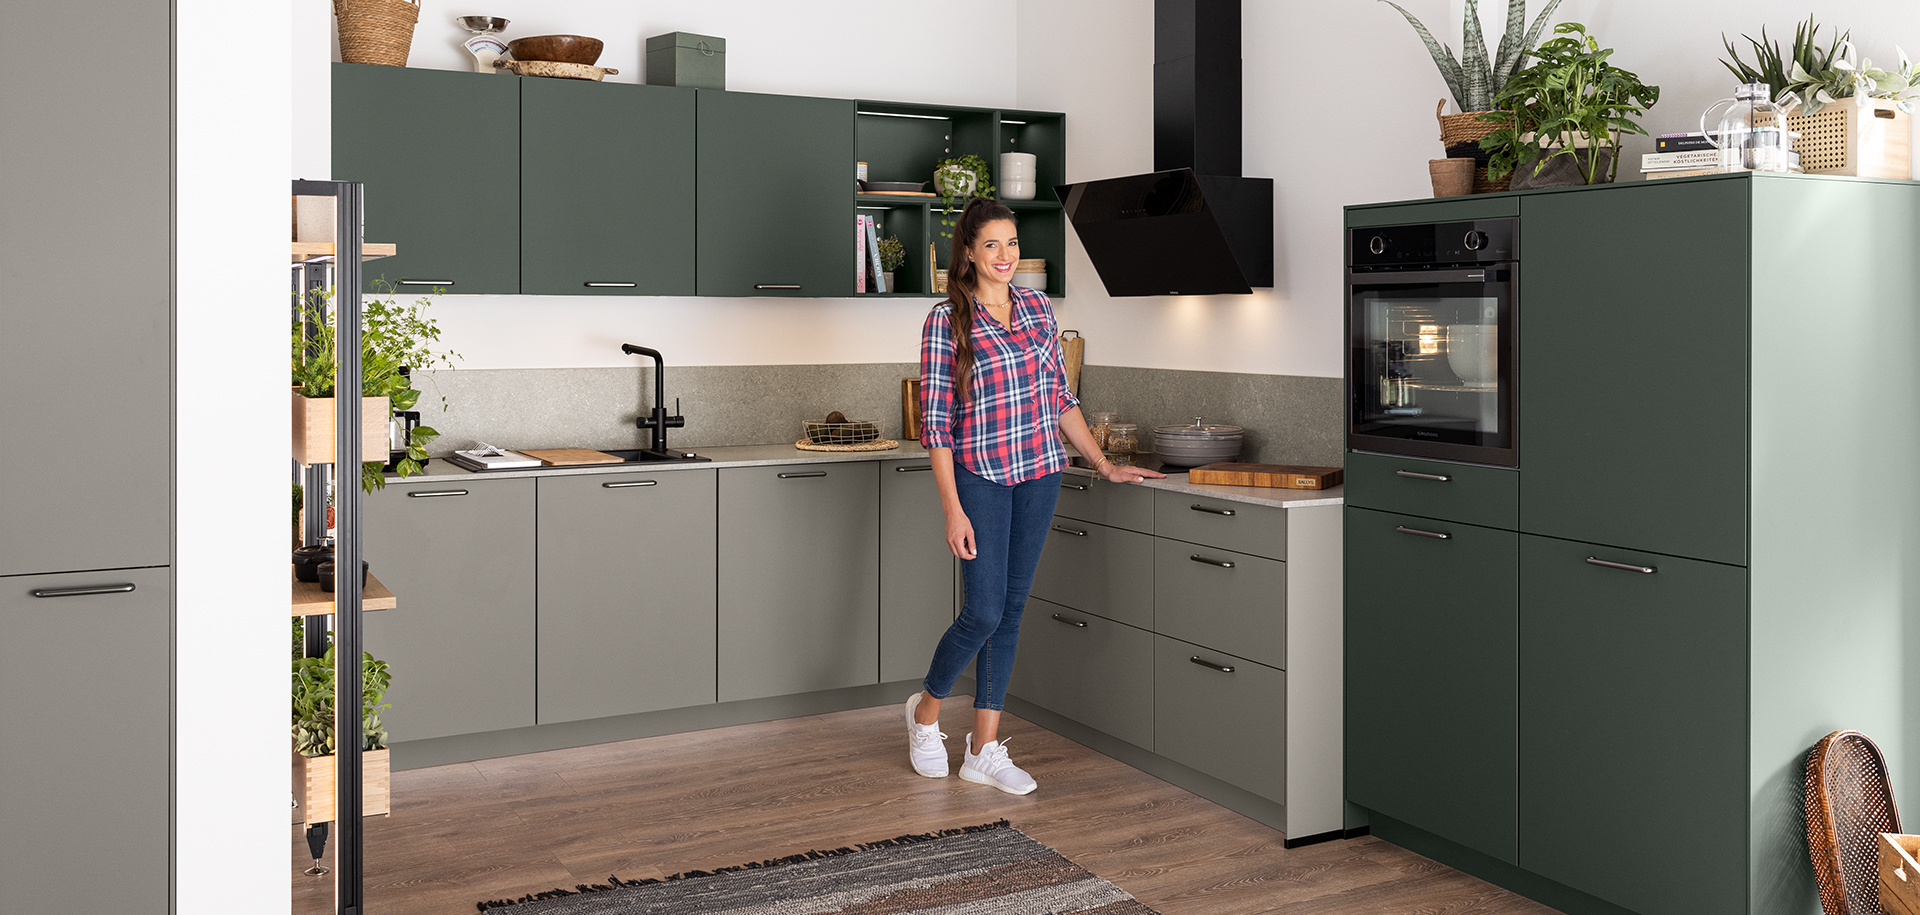 Vrouw staat in een moderne keuken met groene kasten, roestvrijstalen apparaten en houten accenten, en maakt een gastvrij gebaar.